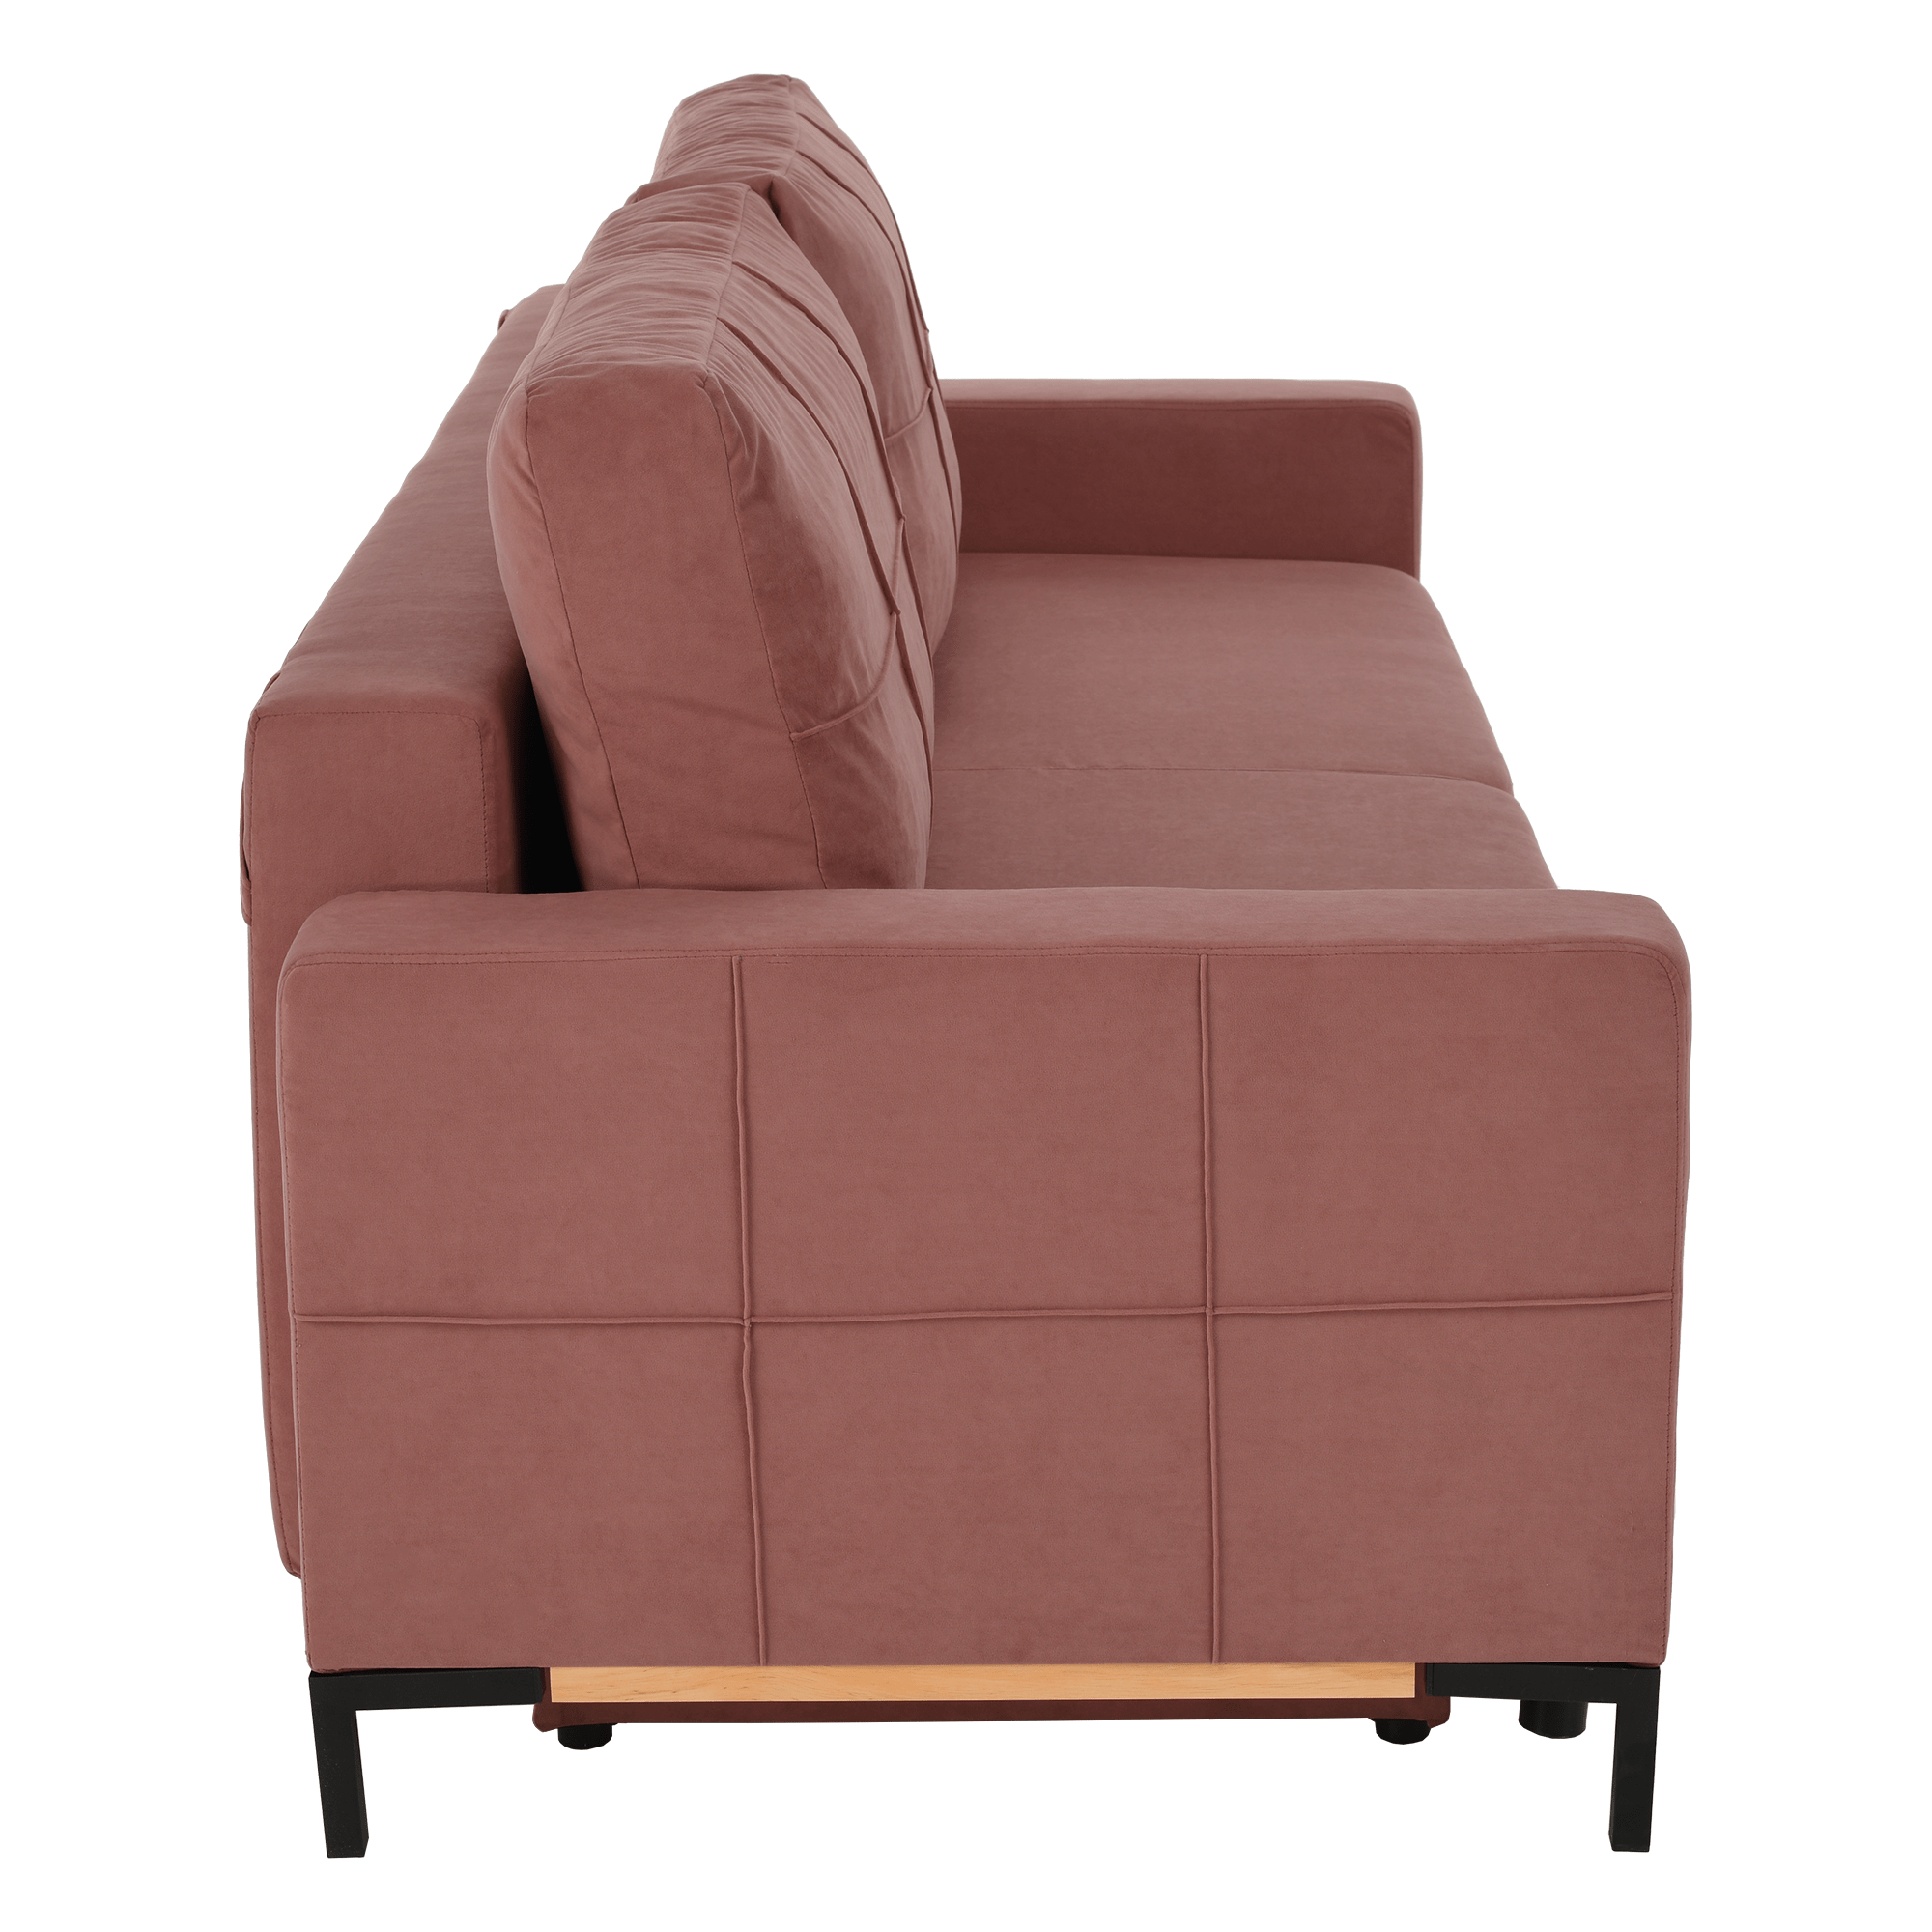 kanapé, rózsaszín, RAMOS